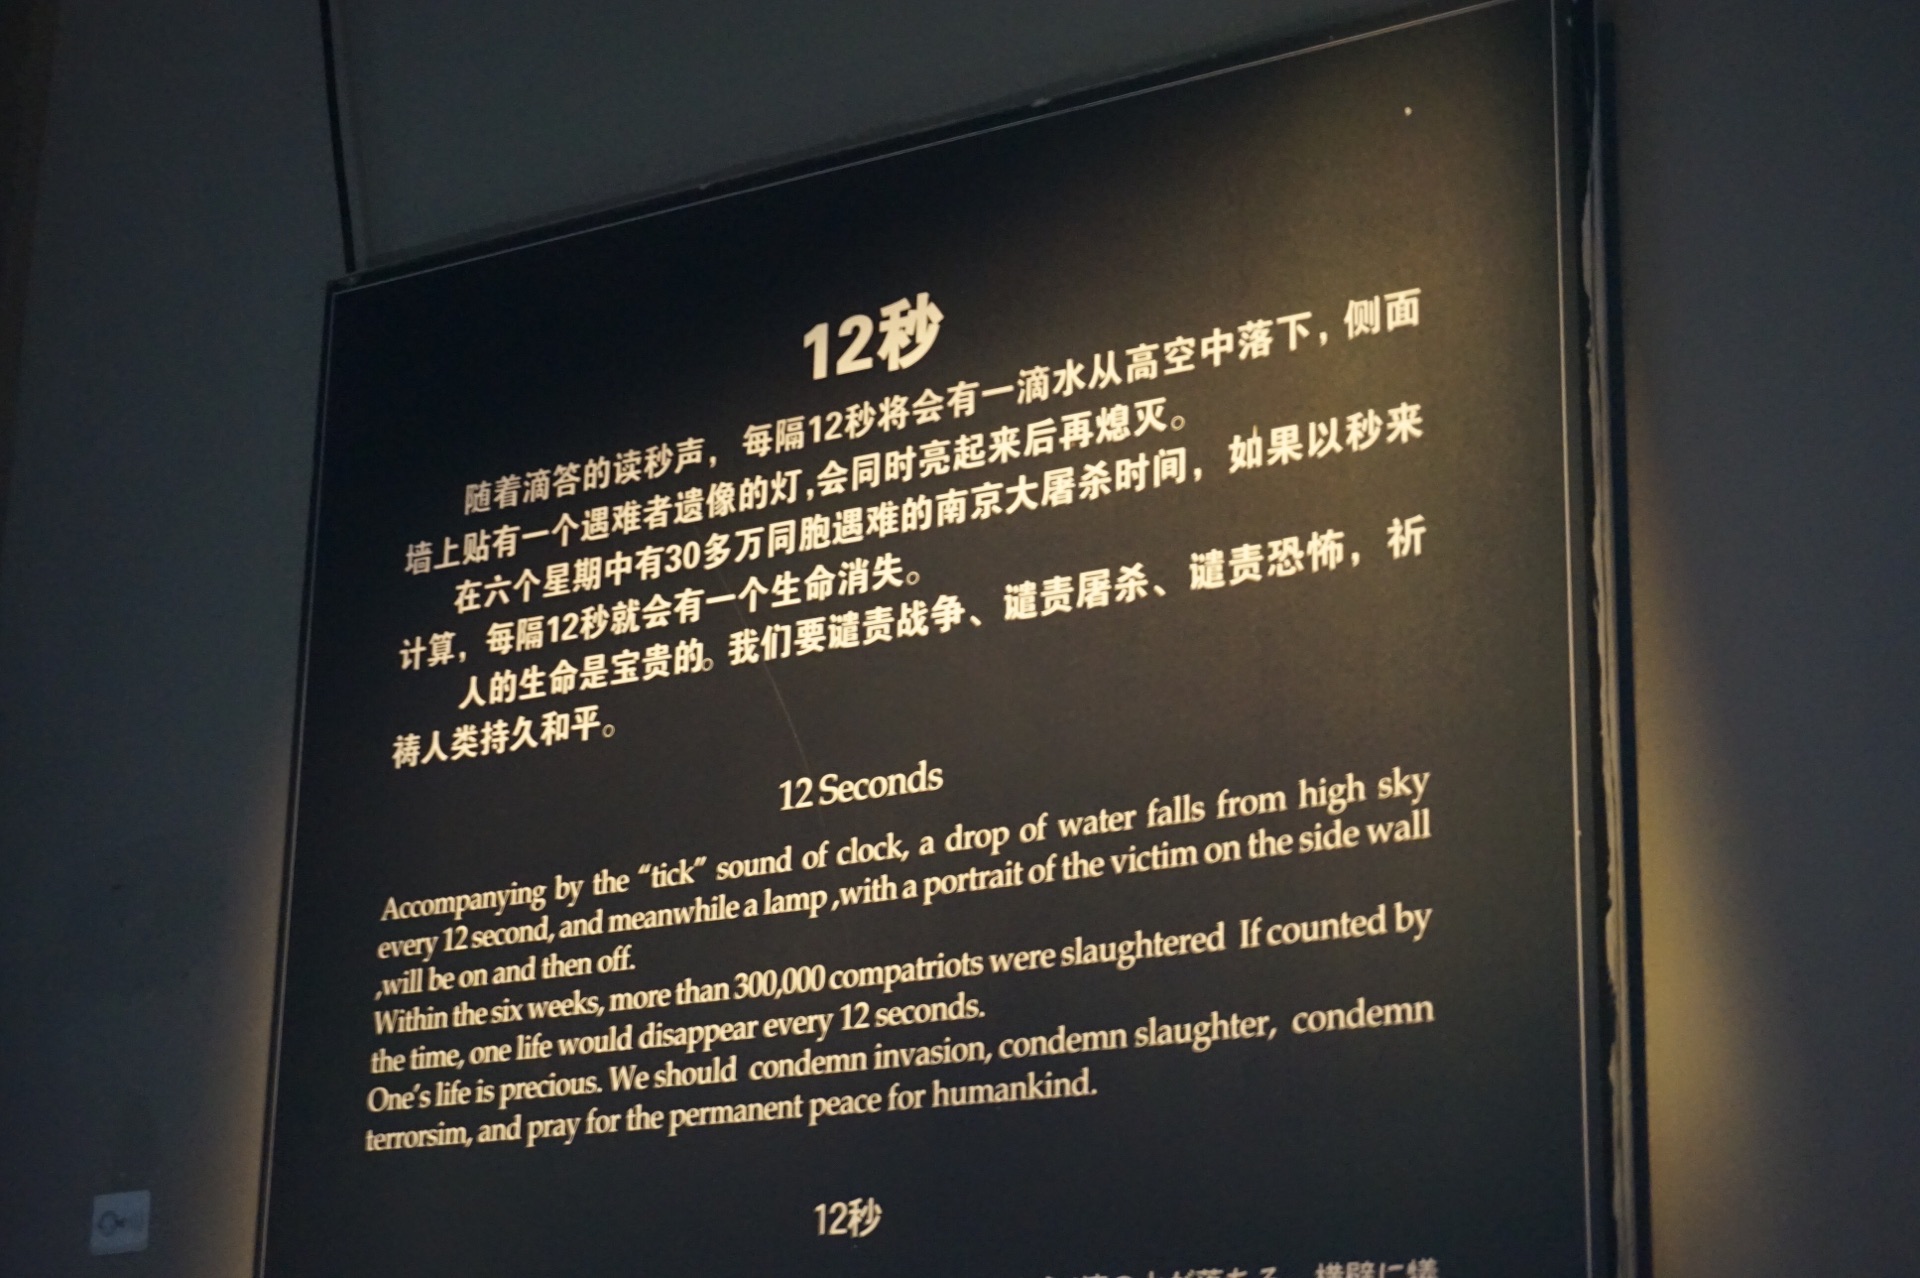 侵华日军南京大屠杀遇难同胞纪念馆|纪念馆|南京大屠杀|江东门_新浪新闻